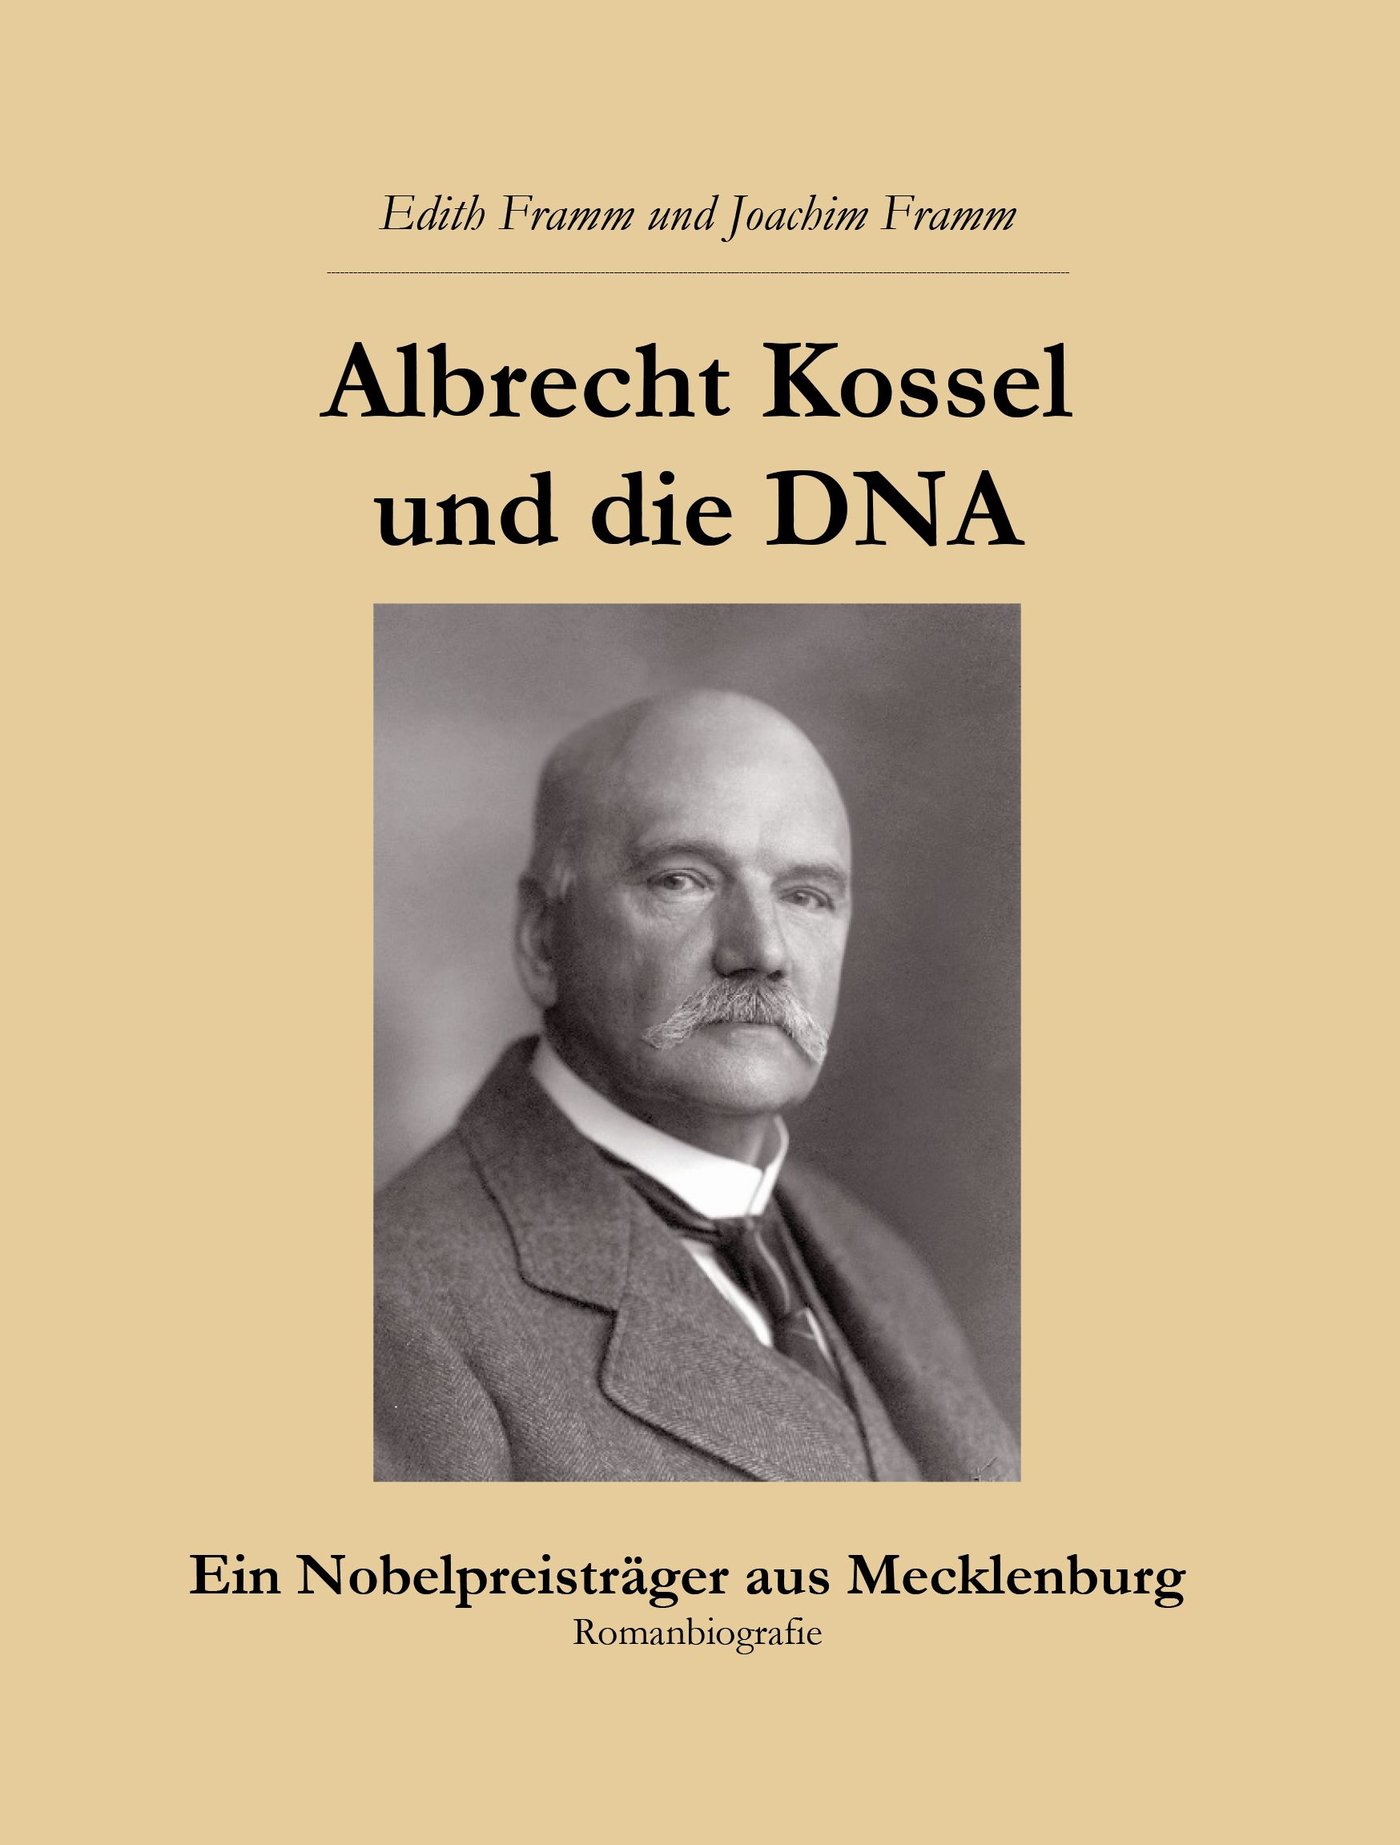 Albrecht Kossel und die DNA